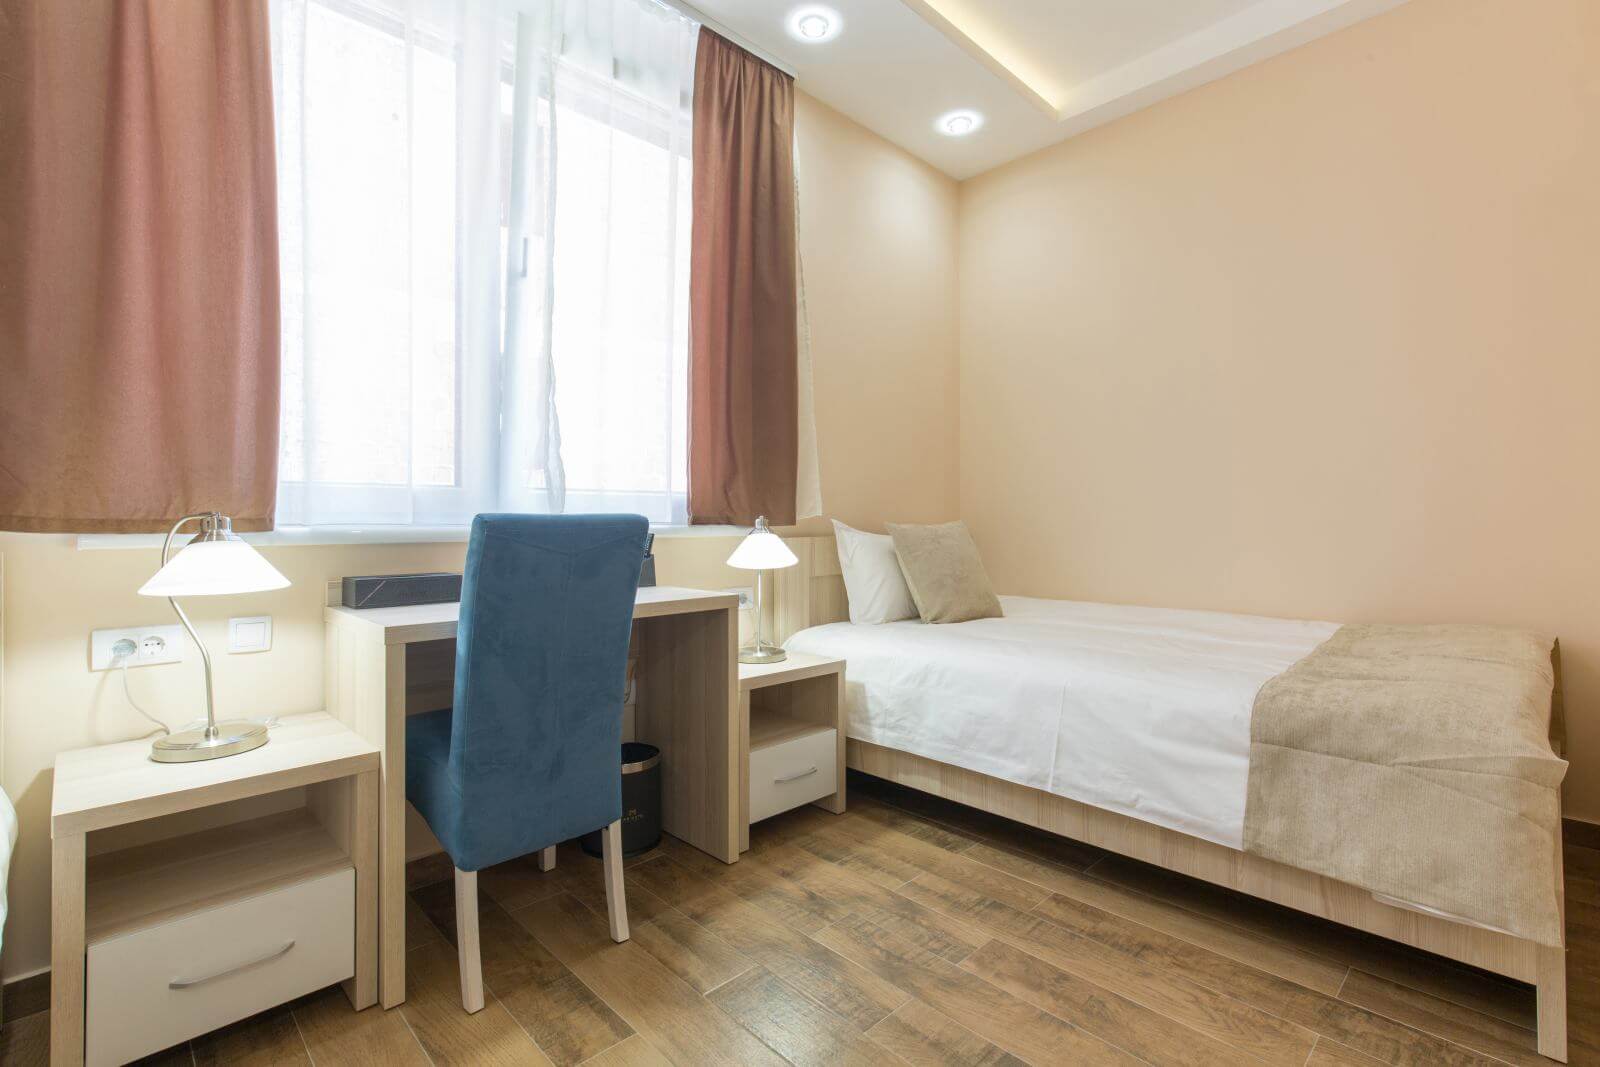 Hotel room interior, beige bedroom